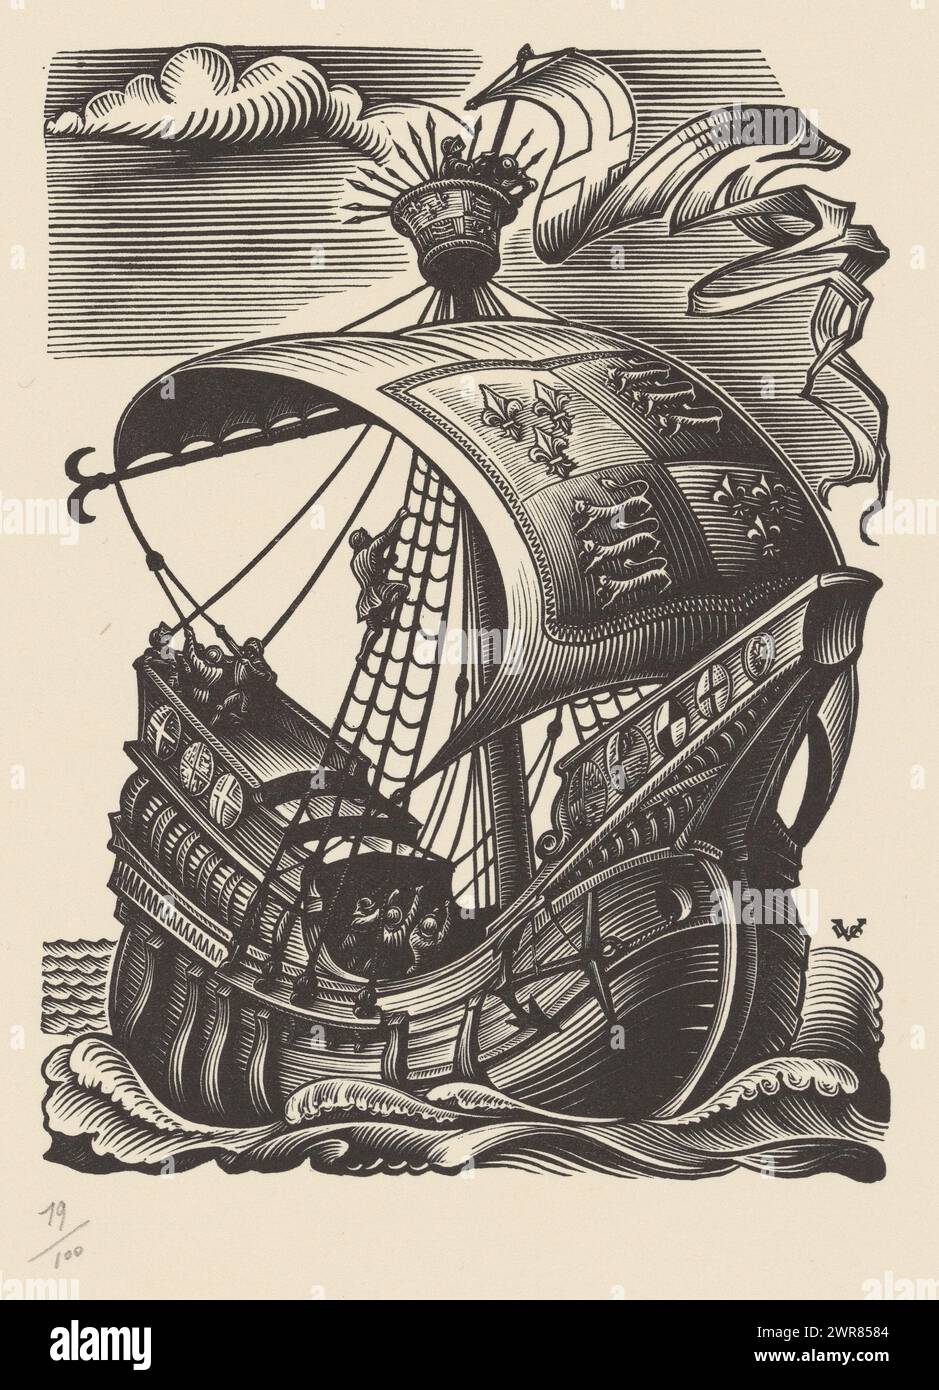 Nave a cremagliera con stemma a vela, stampatore: Valentin le Campion, 1871 - 1952, carta, incisione in legno, altezza 301 mm x larghezza 238 mm, stampa Foto Stock